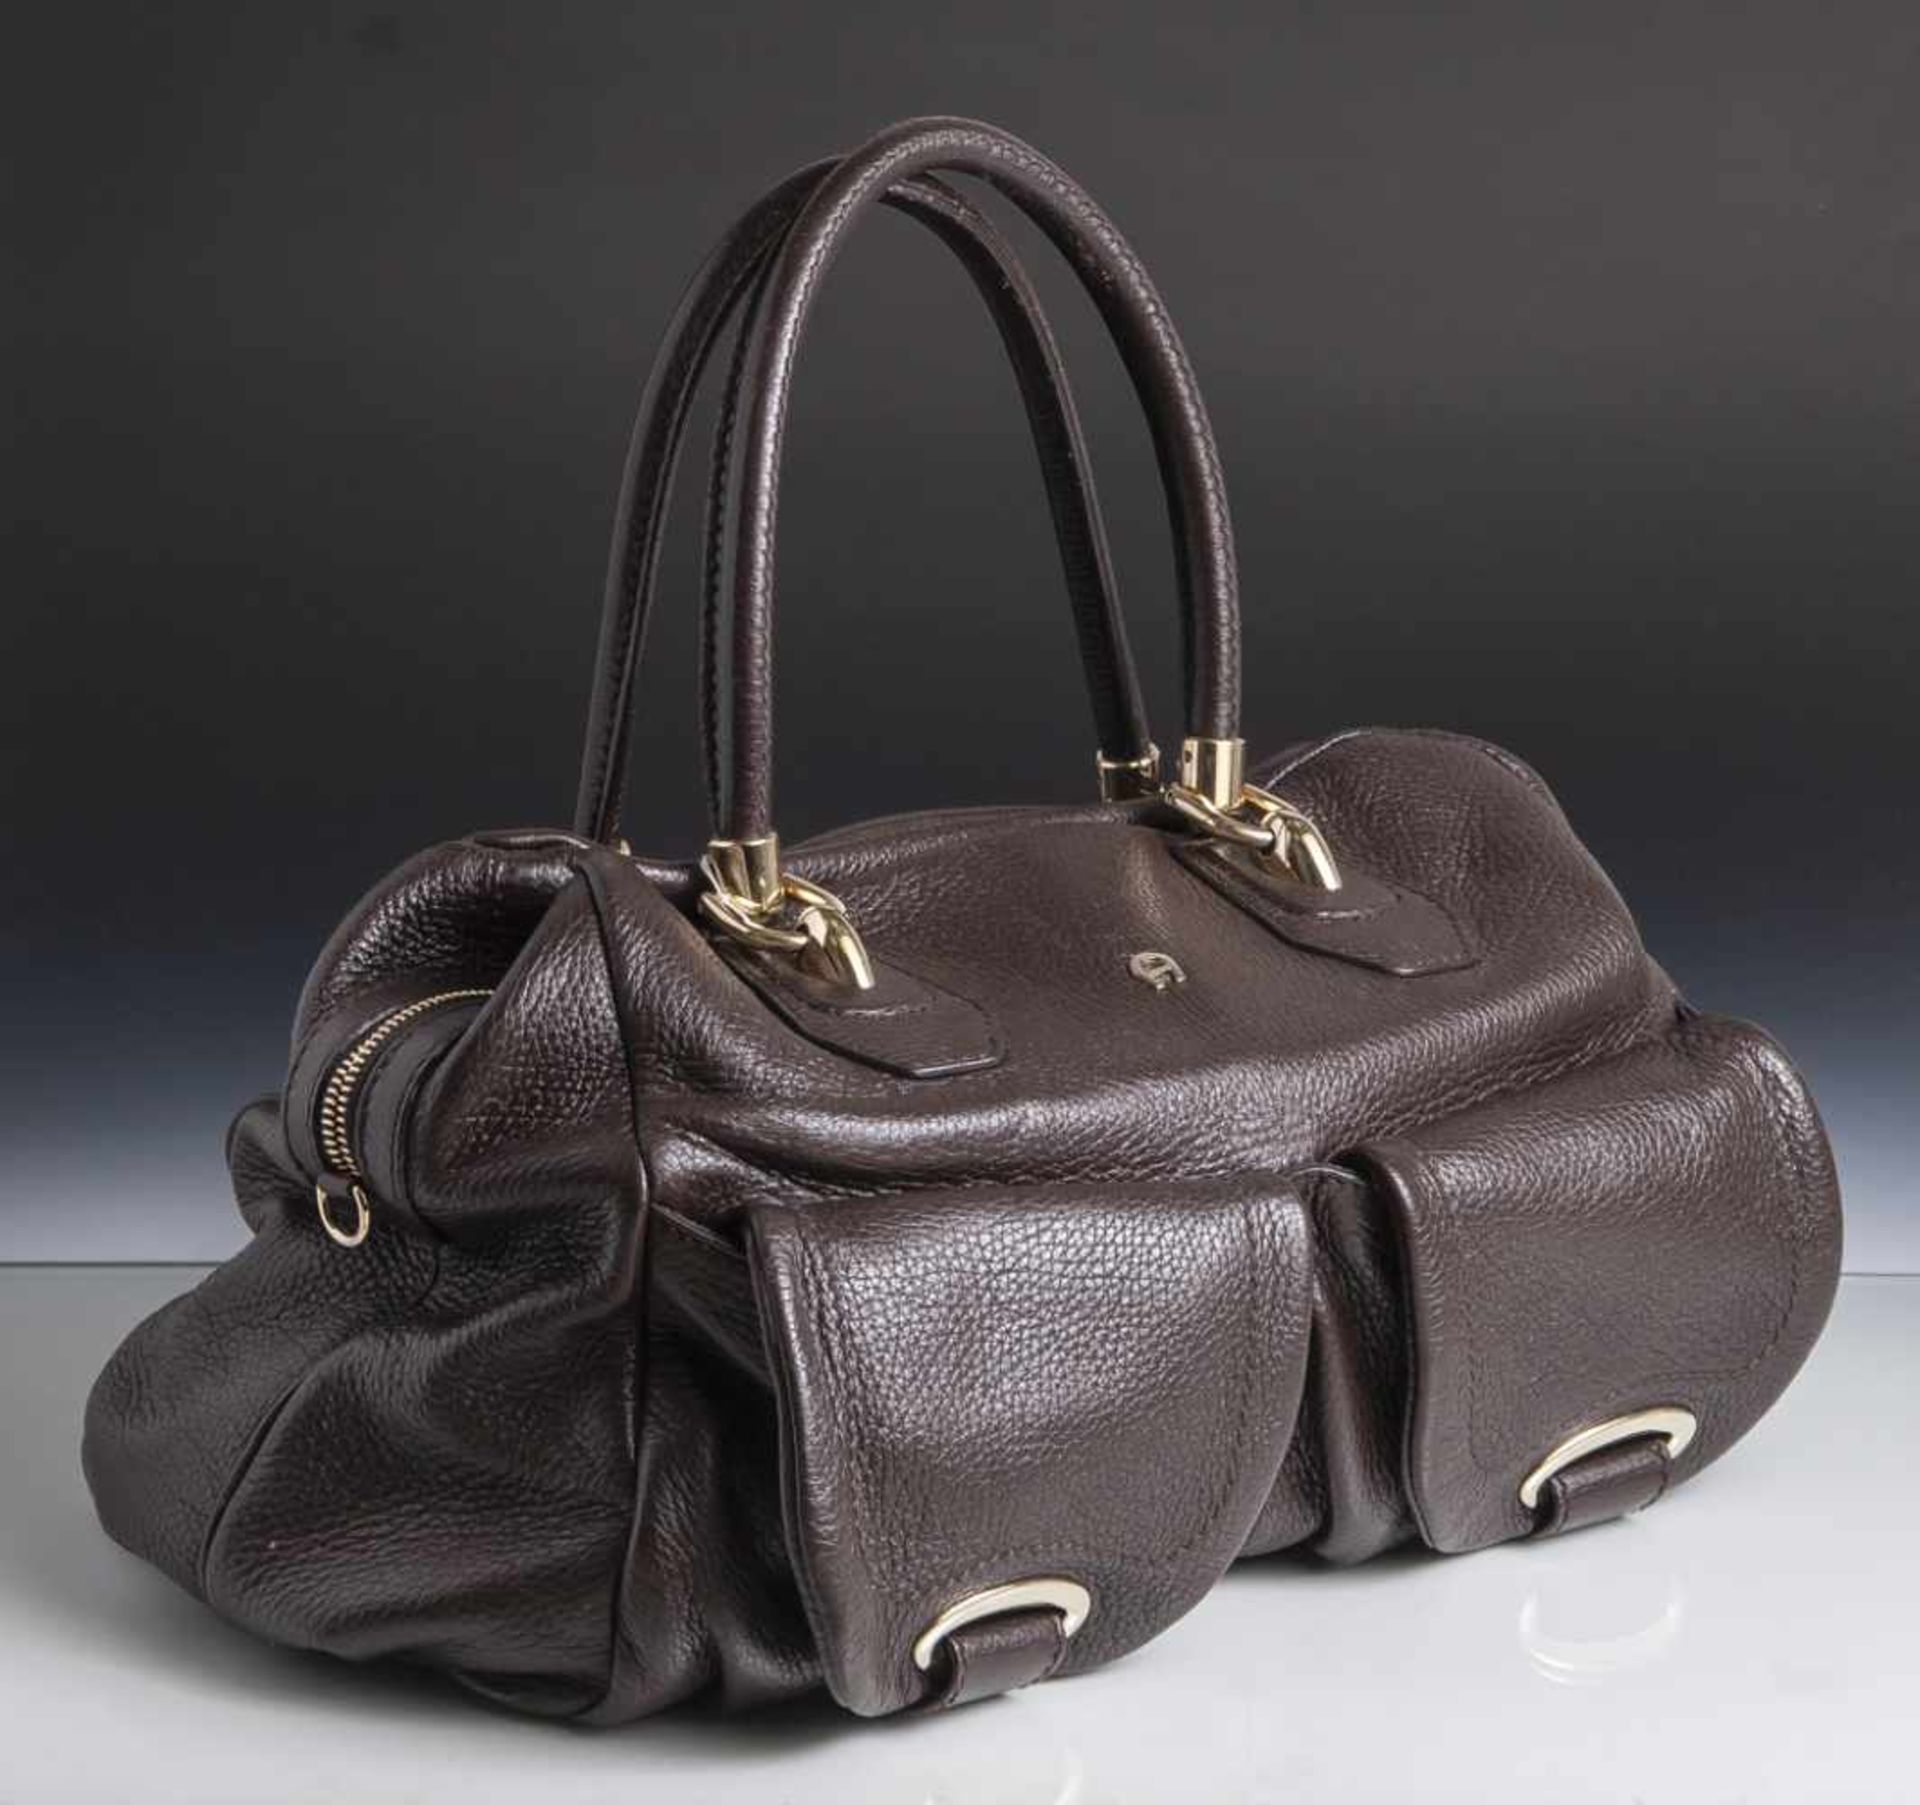 Damenhandtasche, Aigner, braunes Leder, leicht strukturiert, Metallmontierung. 2 Tragegriffe. Ca. 25